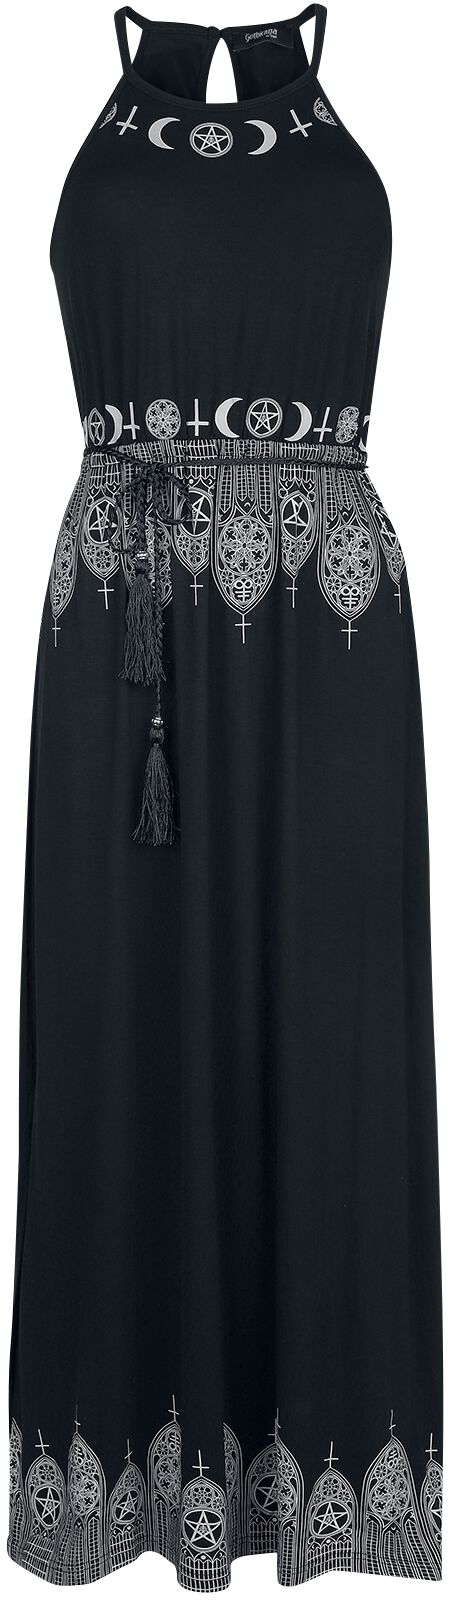 Gothicana by EMP Schwarzes Maxikleid mit Prints und schmalem Bindegürtel Langes Kleid schwarz in XL